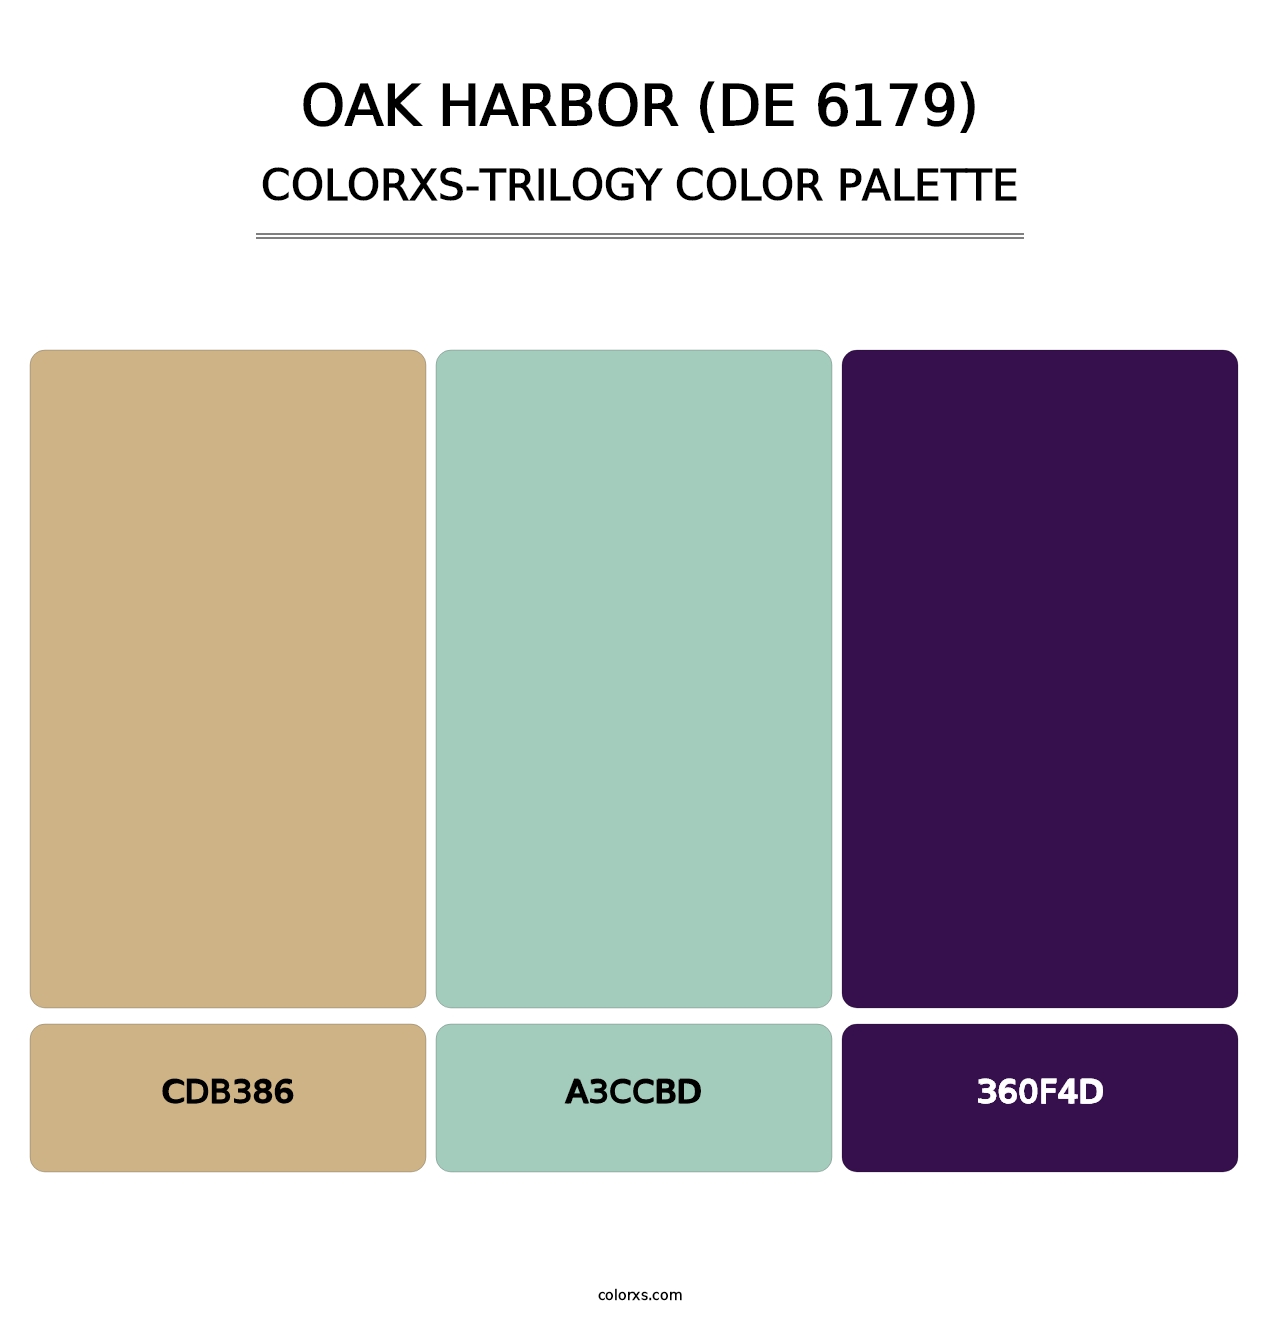 Oak Harbor (DE 6179) - Colorxs Trilogy Palette